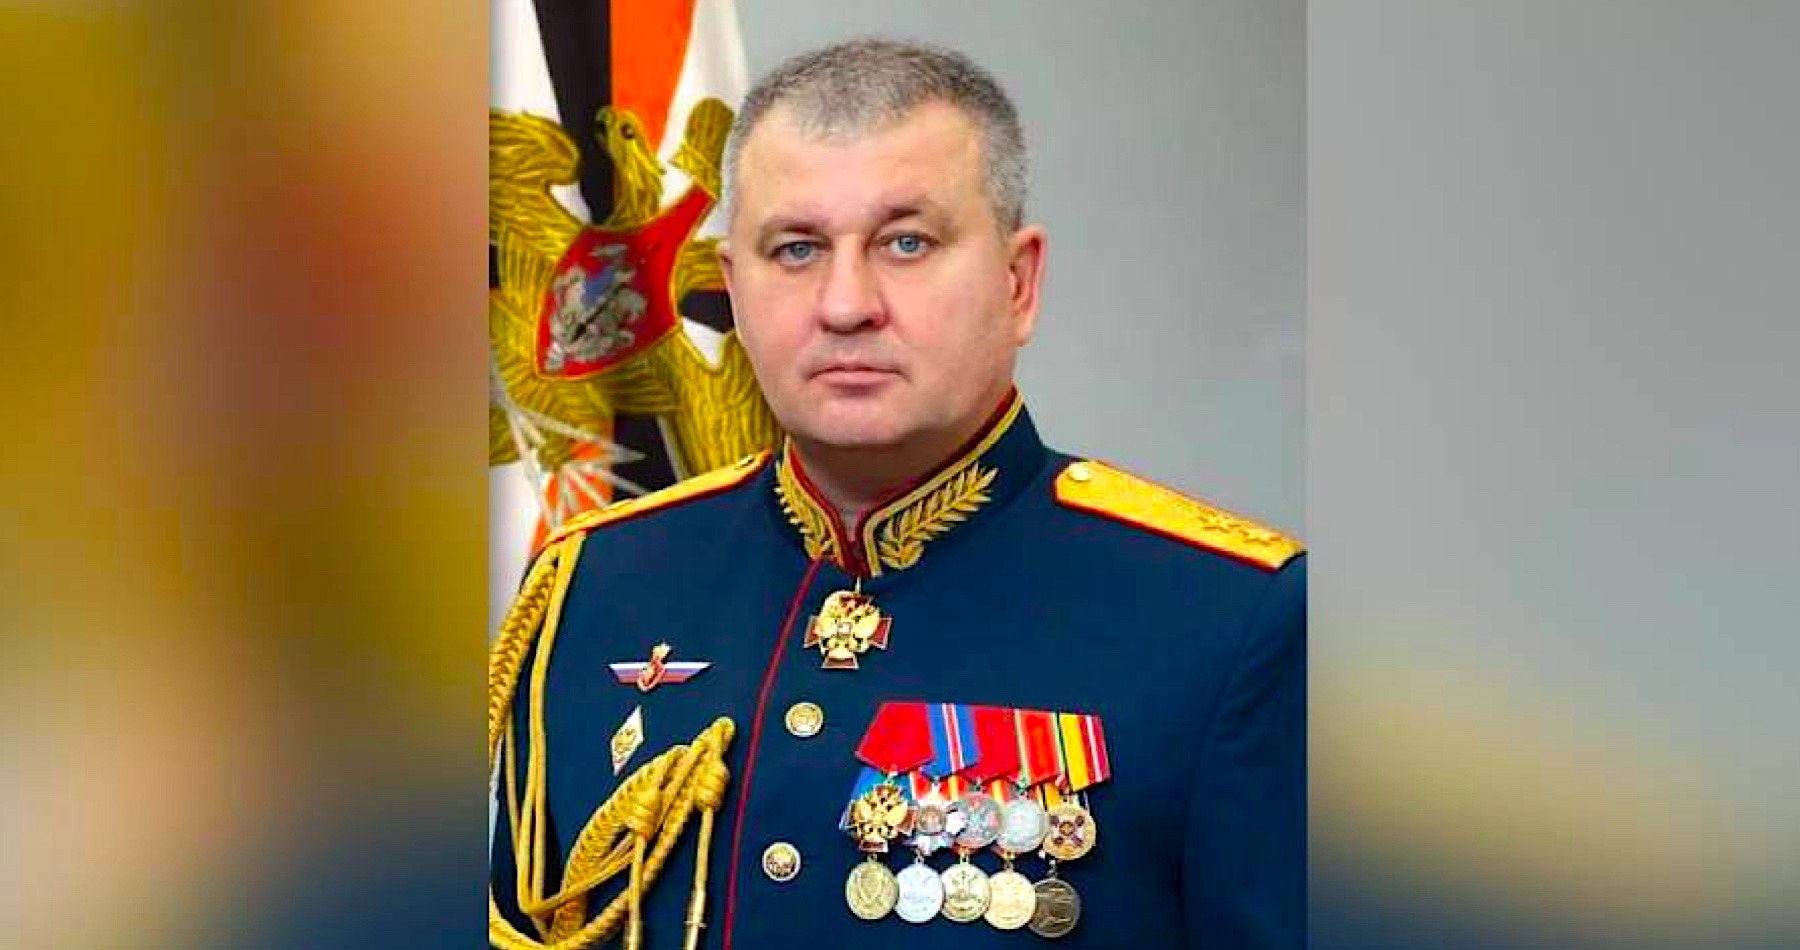 Ruský Sledkom zadržal ďalšieho čelného predstaviteľa ruskej armády podozrivého z korupcie